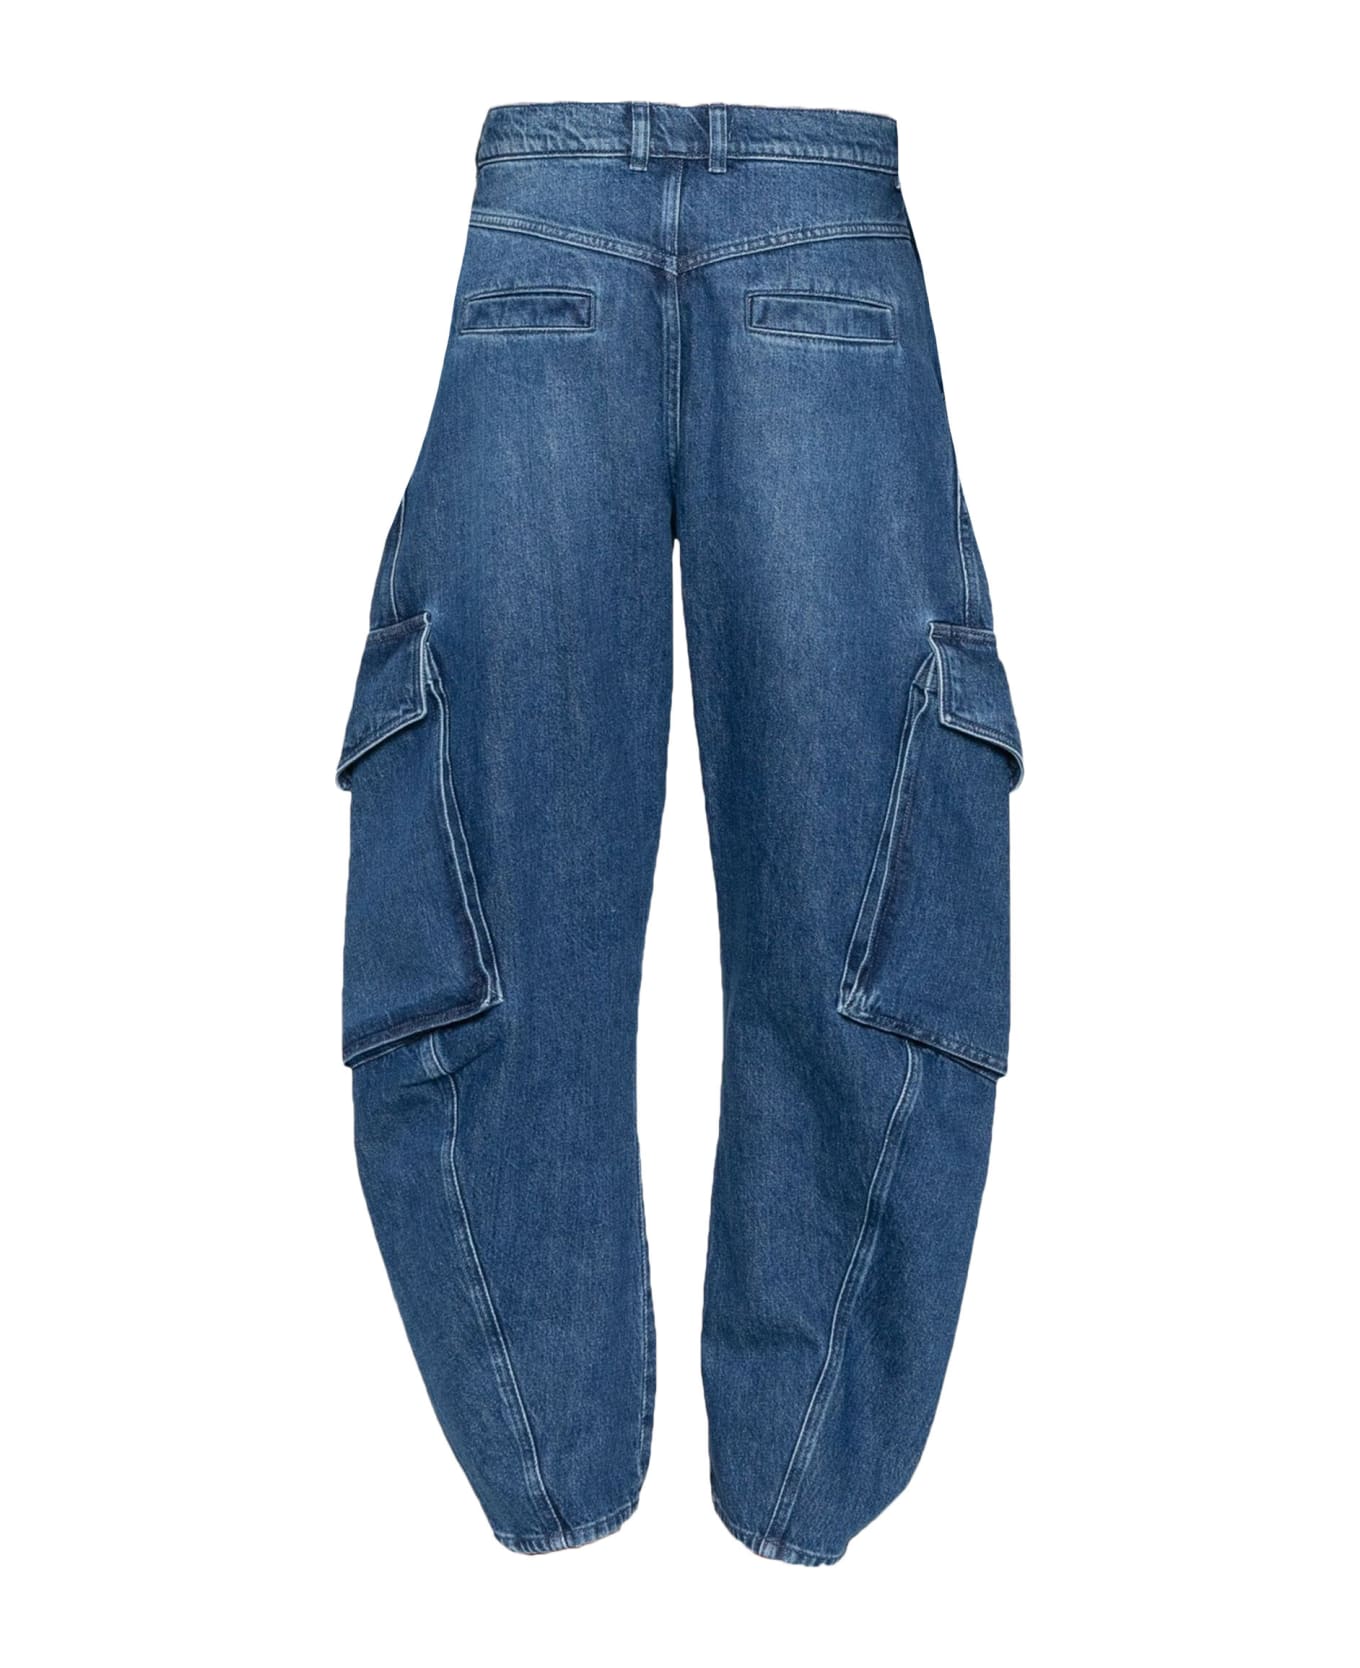 J.W. Anderson Indigo Blue Cotton Blend Jeans - Blue